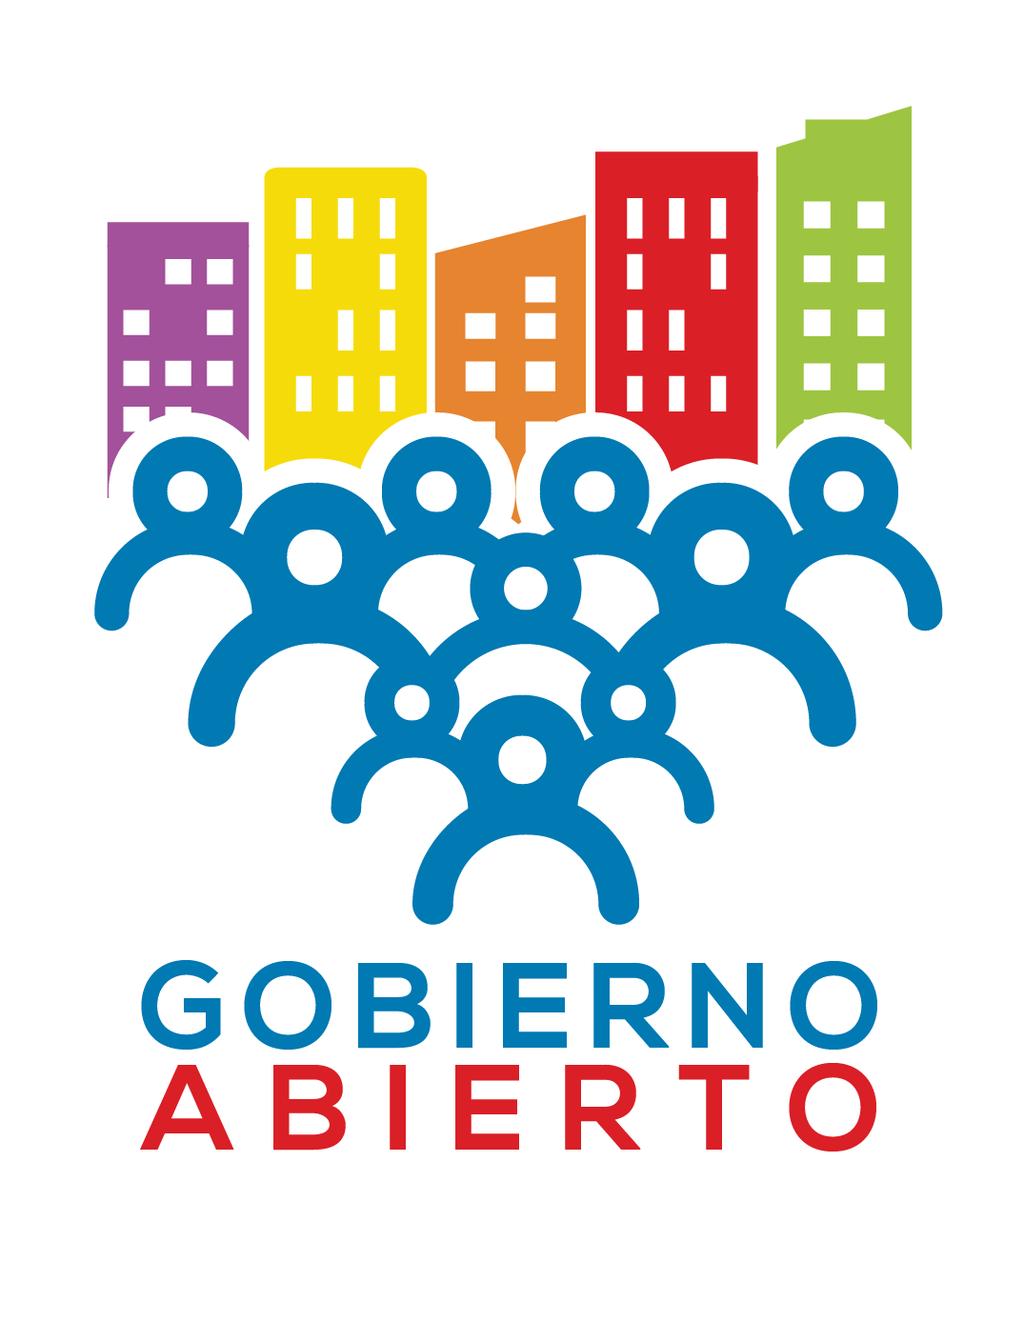 GOBIERNO ABIERTO GOBIERNO ABIERTO desea ser un espacio, en permanente ampliación, donde los Ciudadanos y Ciudadanas CONOCEN, SE INFORMAN, OPINAN, VALORAN, DECIDEN, PROPONEN Y CONSTRUYEN una